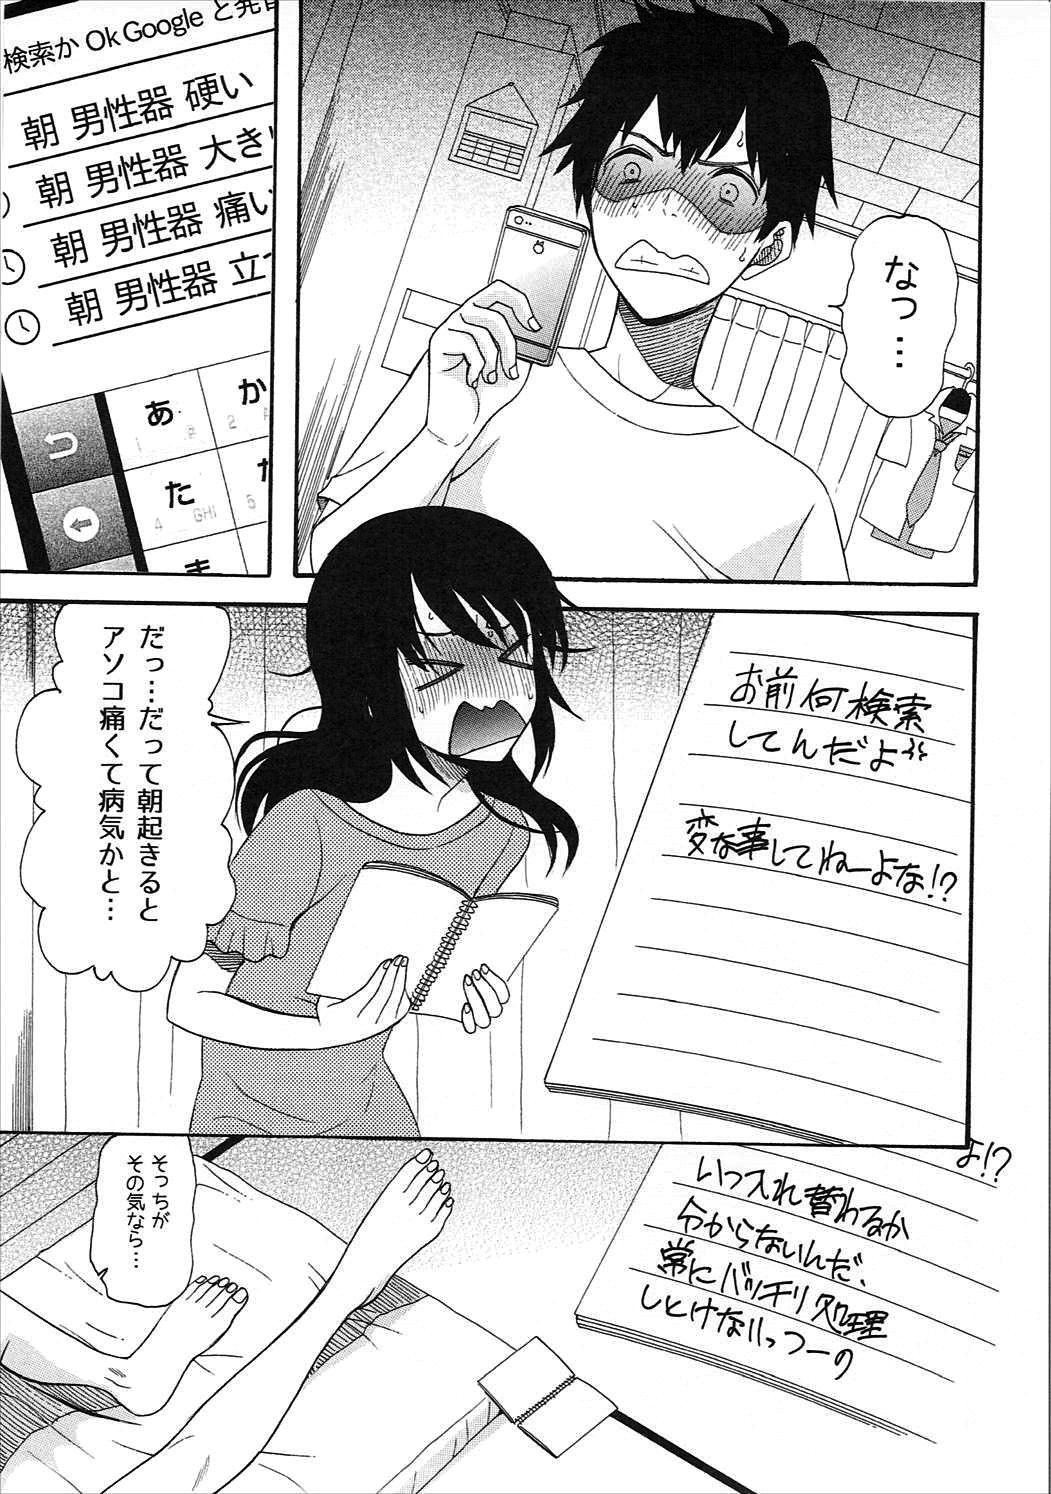 Eng Sub Futari no Hibi o. - Kimi no na wa. Motel - Page 4